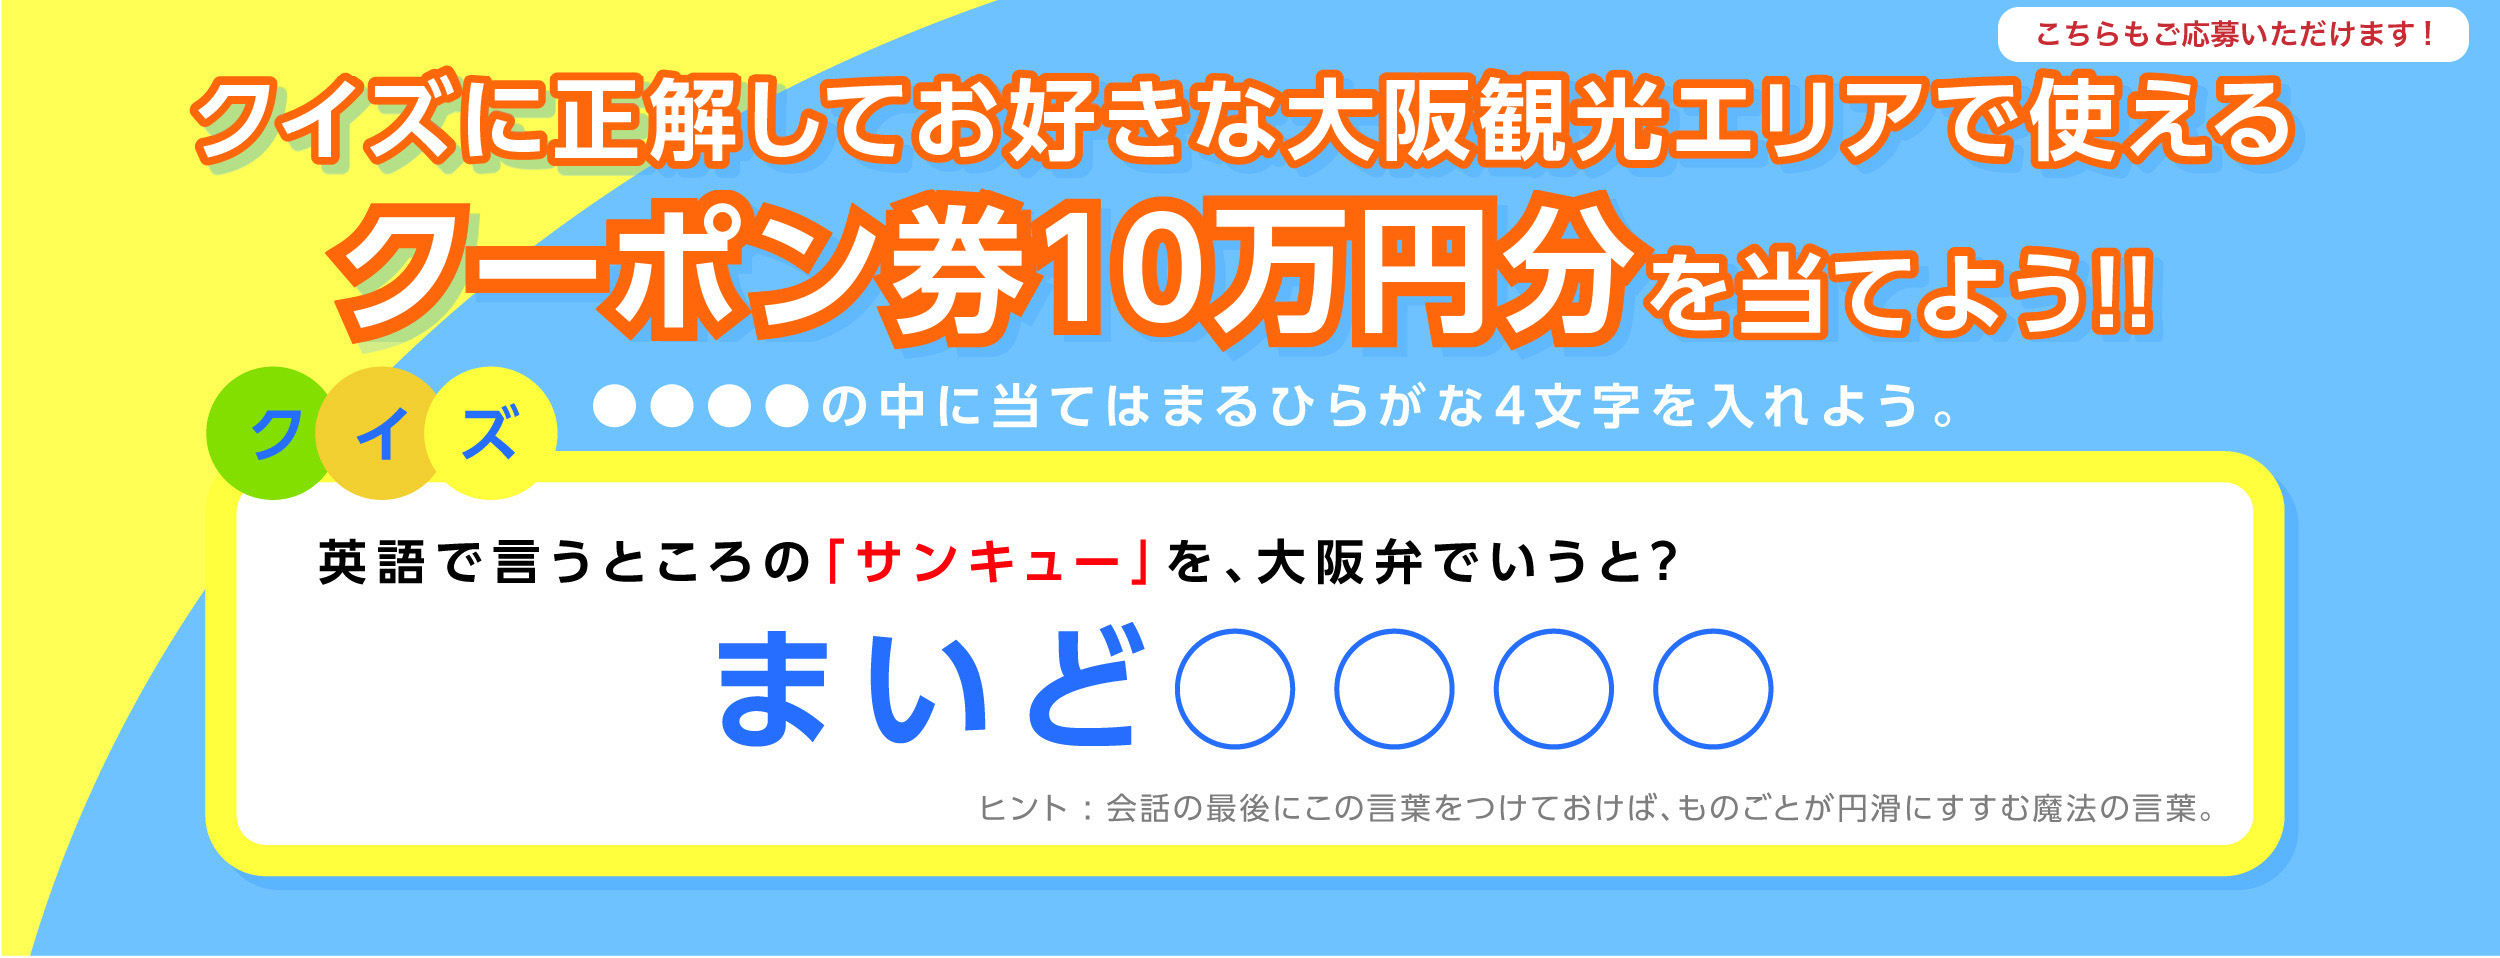 クイズに答えて10万円分のクーポンを当てよう!!